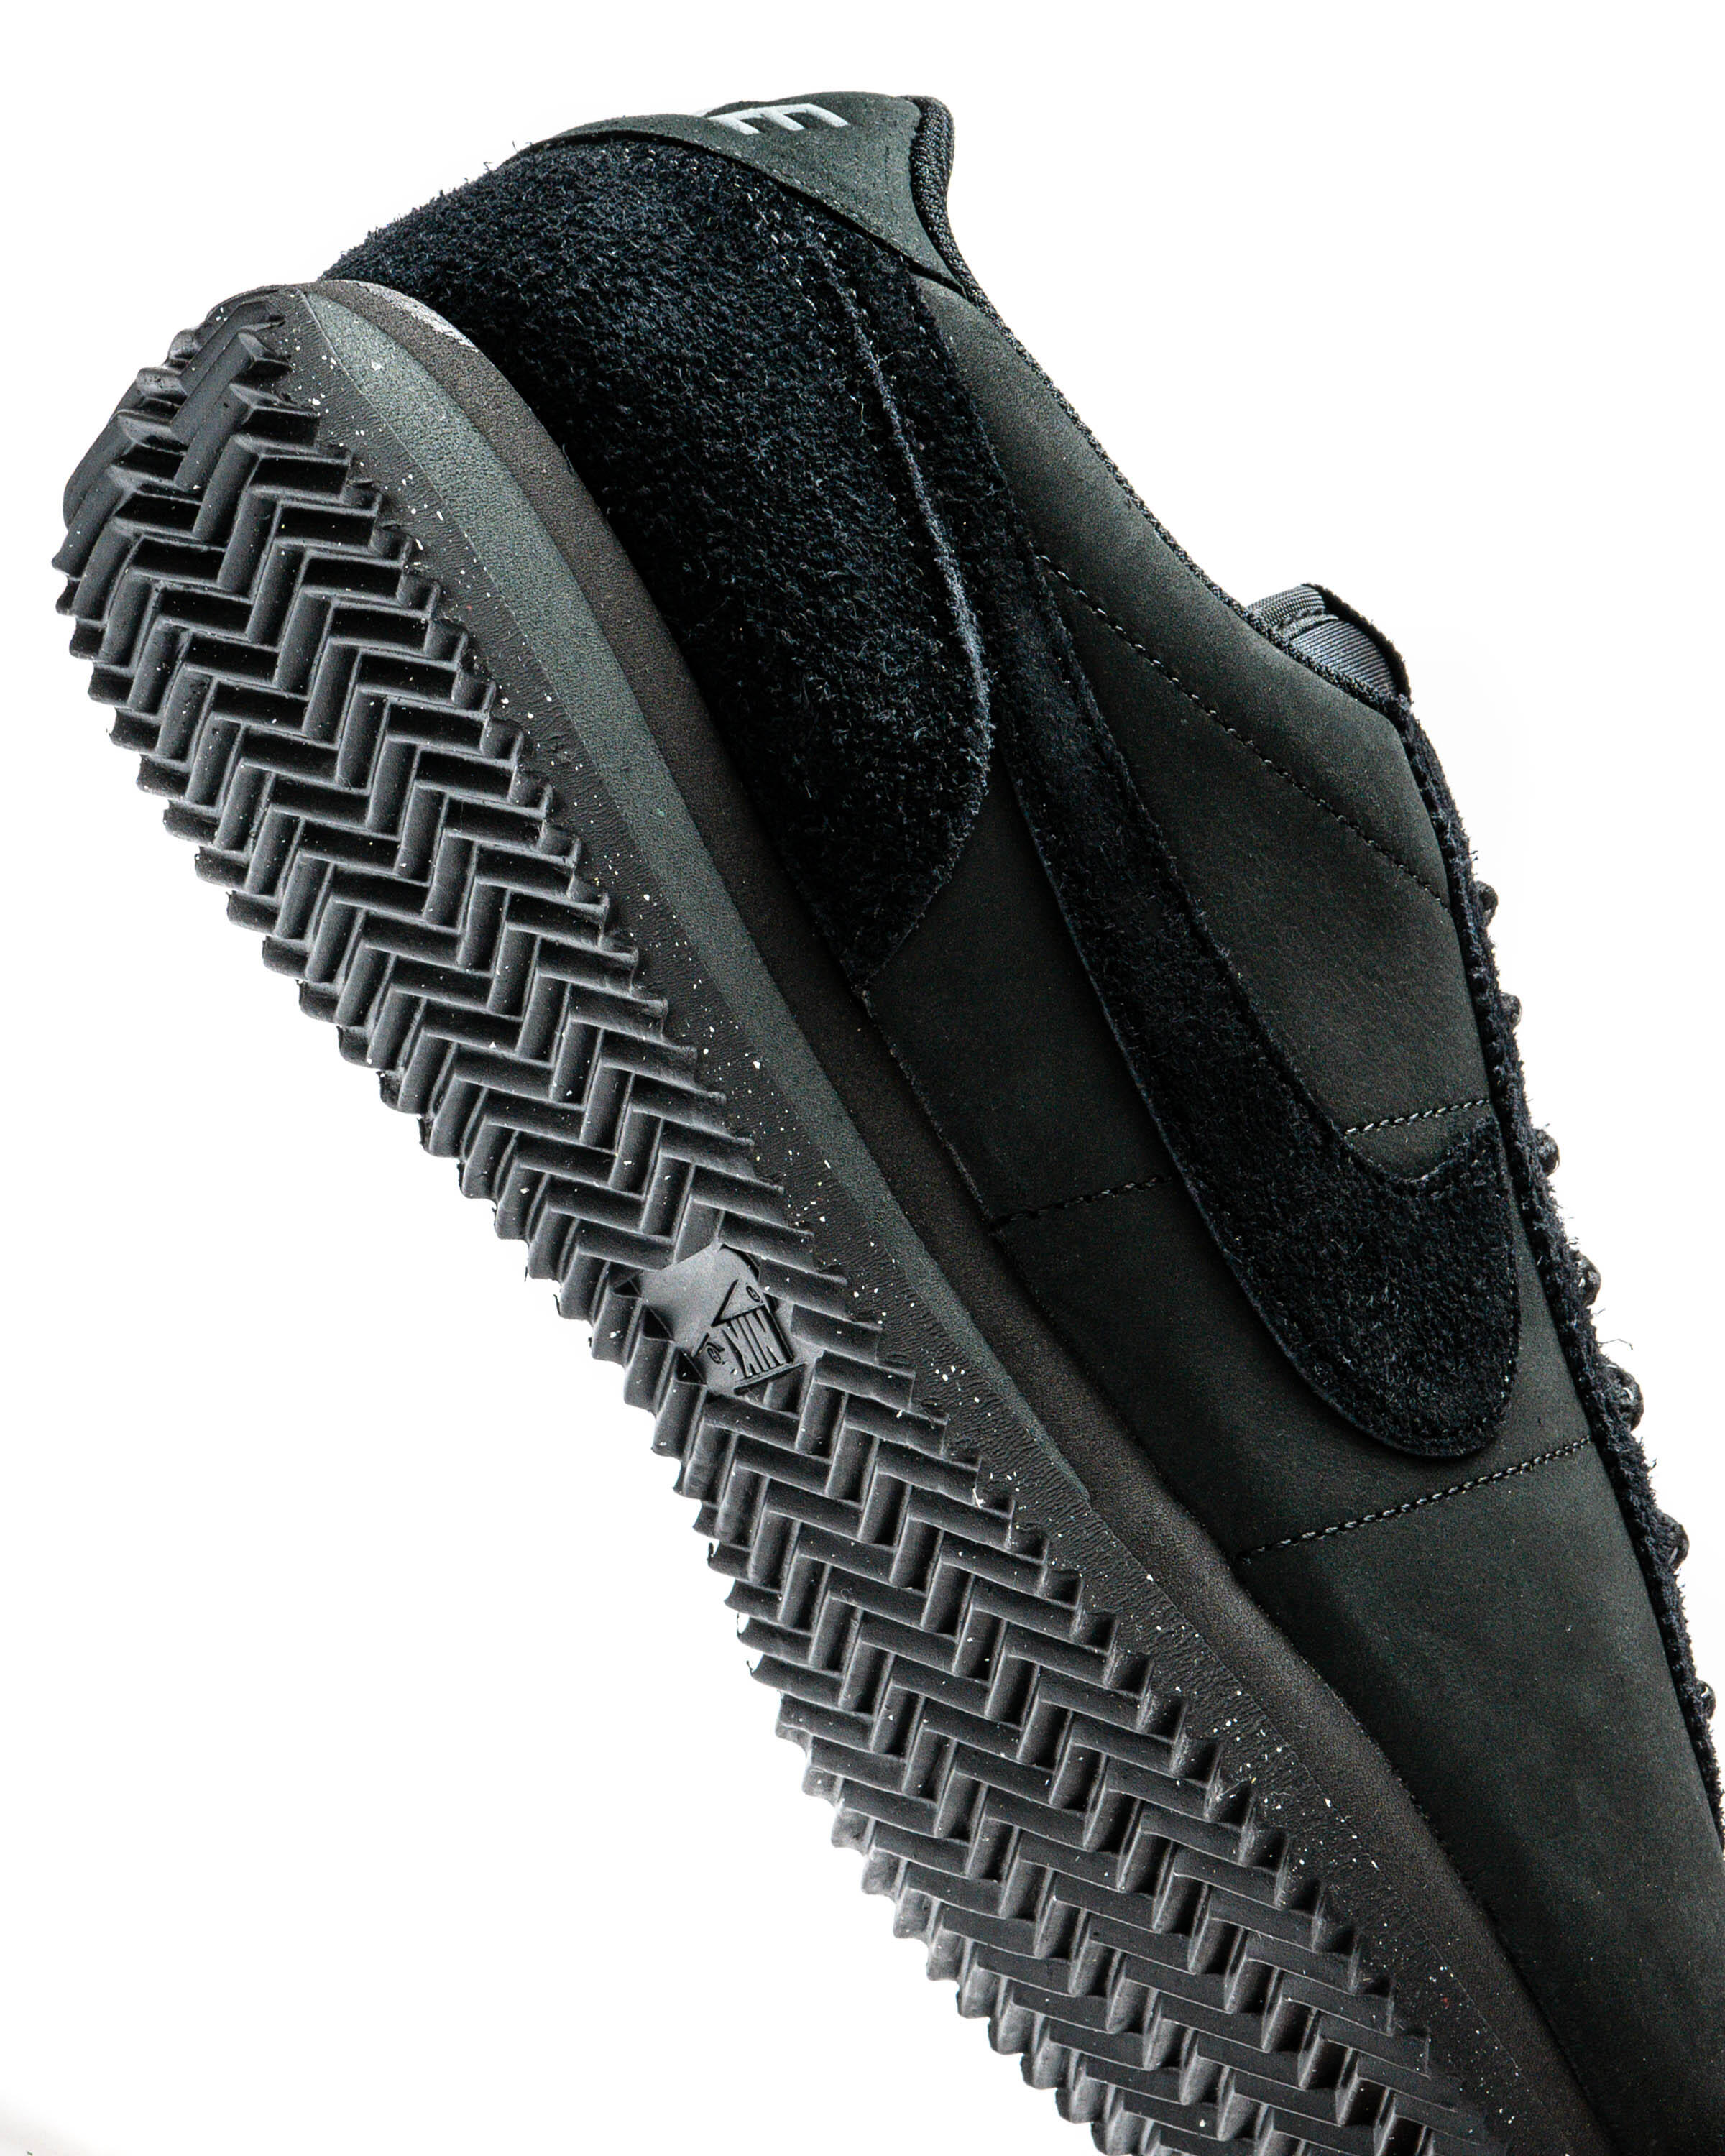 【直売純正】【新品】Nike Cortez PRM “Triple Black” 23cm 靴